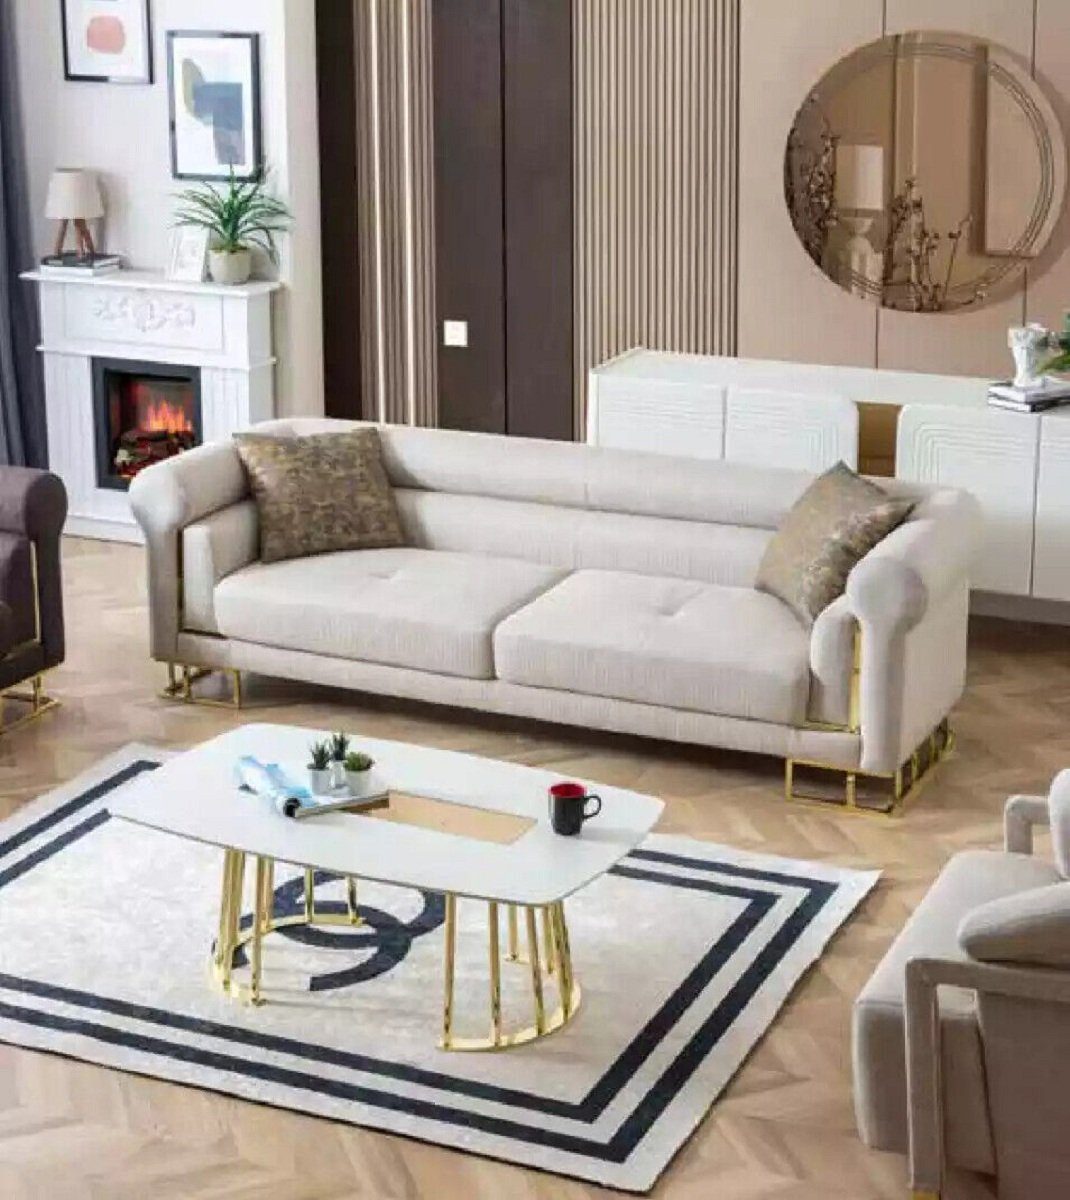 JVmoebel 3-Sitzer Sofa 3 Sitzer Textil Wohnzimmer Design Modern Neu Luxus, 1 Teile, Made in Europa